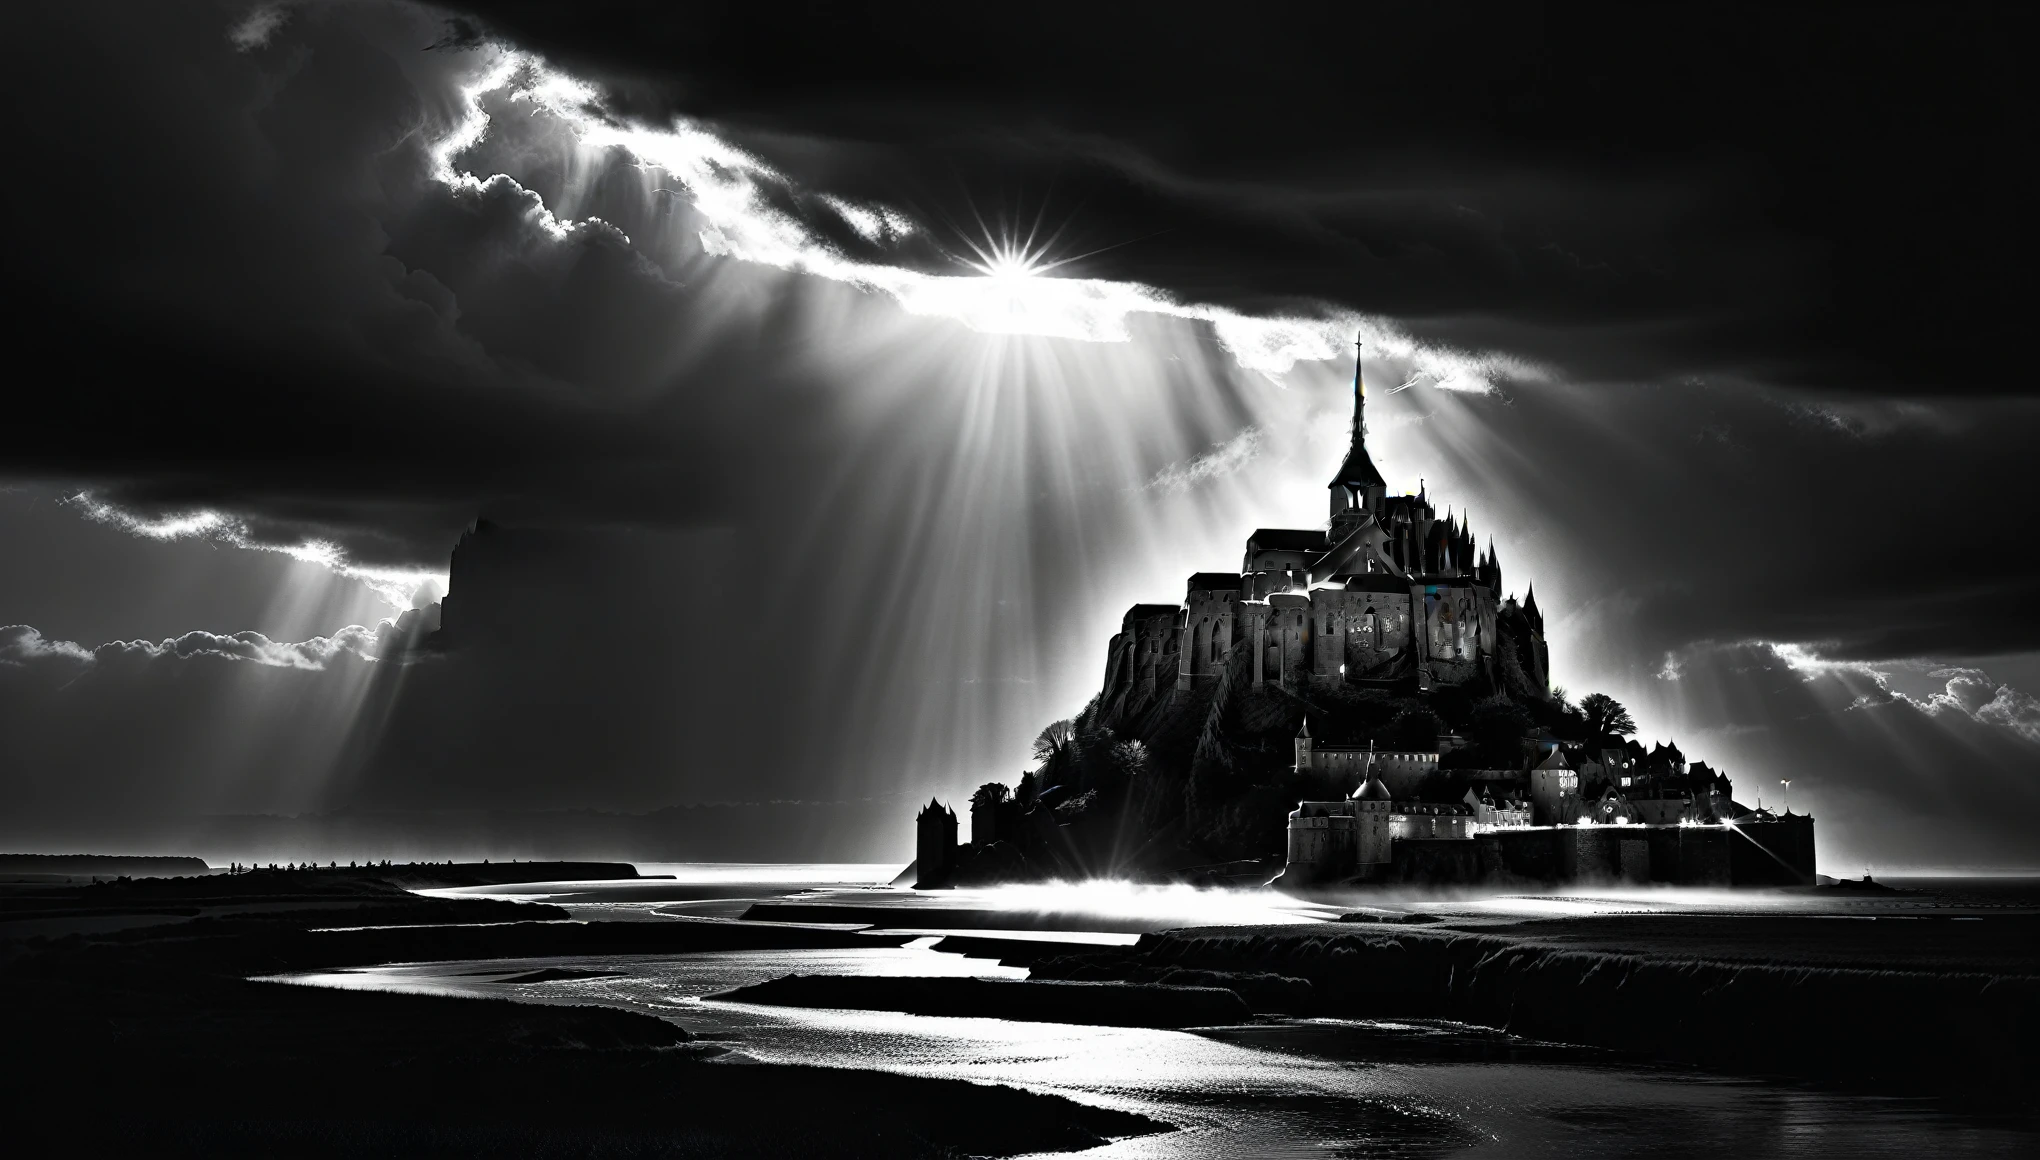 Le Mont-Saint-Michel lies in the 적당히 켜기, 태양이 빛나는 극적인 구름, 적당히 켜기, 통풍, 시네마틱 라이트닝, 그레이스케일에서 색상으로,